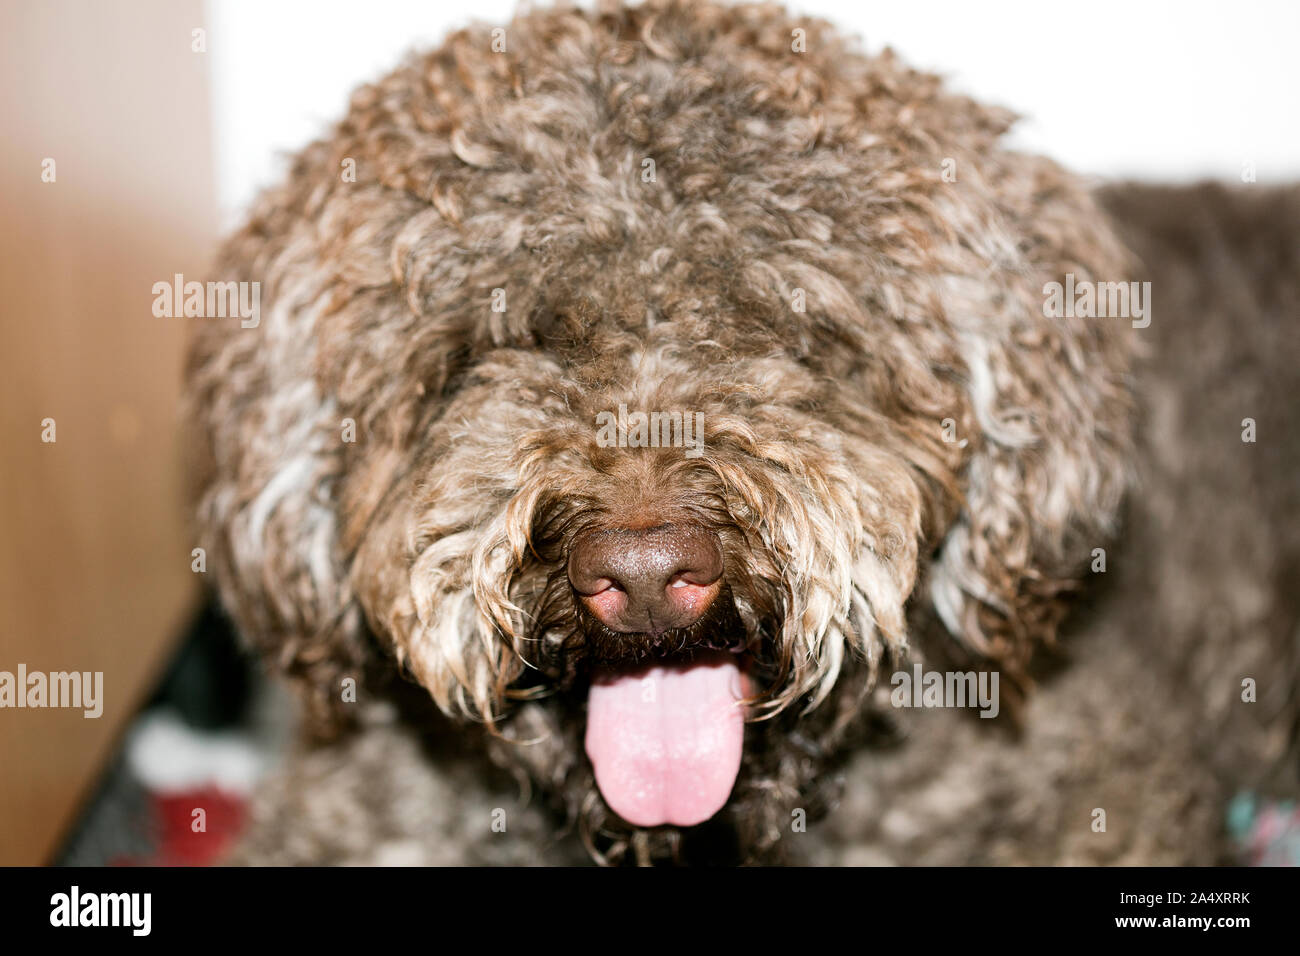 Italien brun macro portrait chien chasse aux truffes de la race Lagotto Romagnolo Banque D'Images